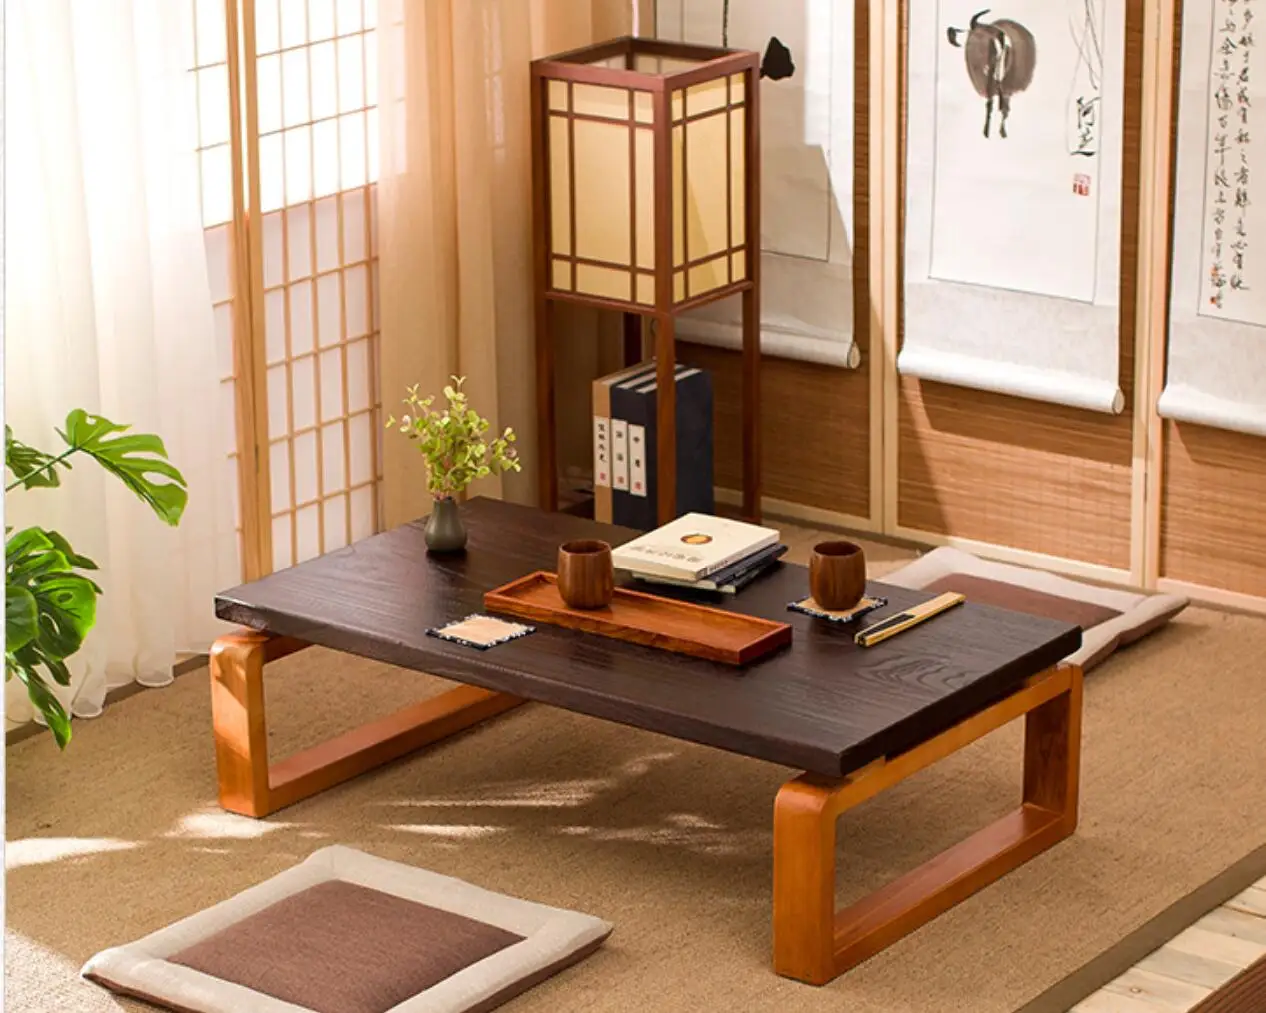 столик с обогревом японский